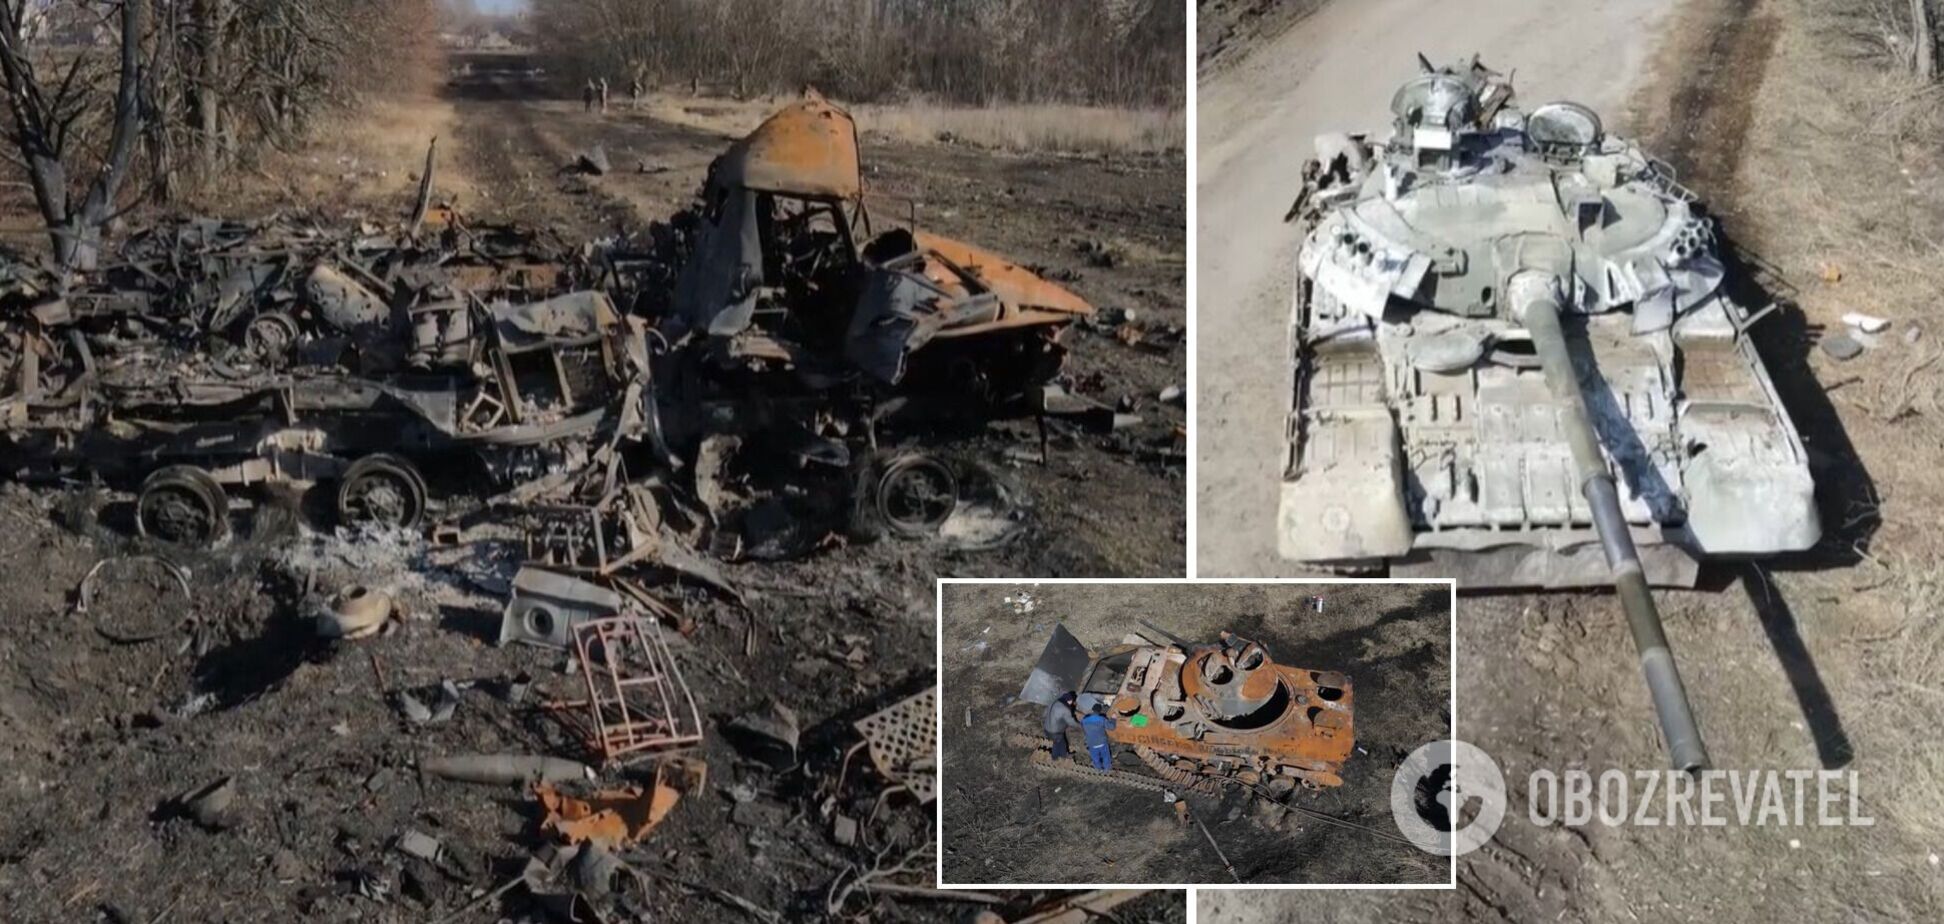 Осталась выжженная земля и металлолом вместо техники: ВСУ уничтожили колонну оккупантов. Видео